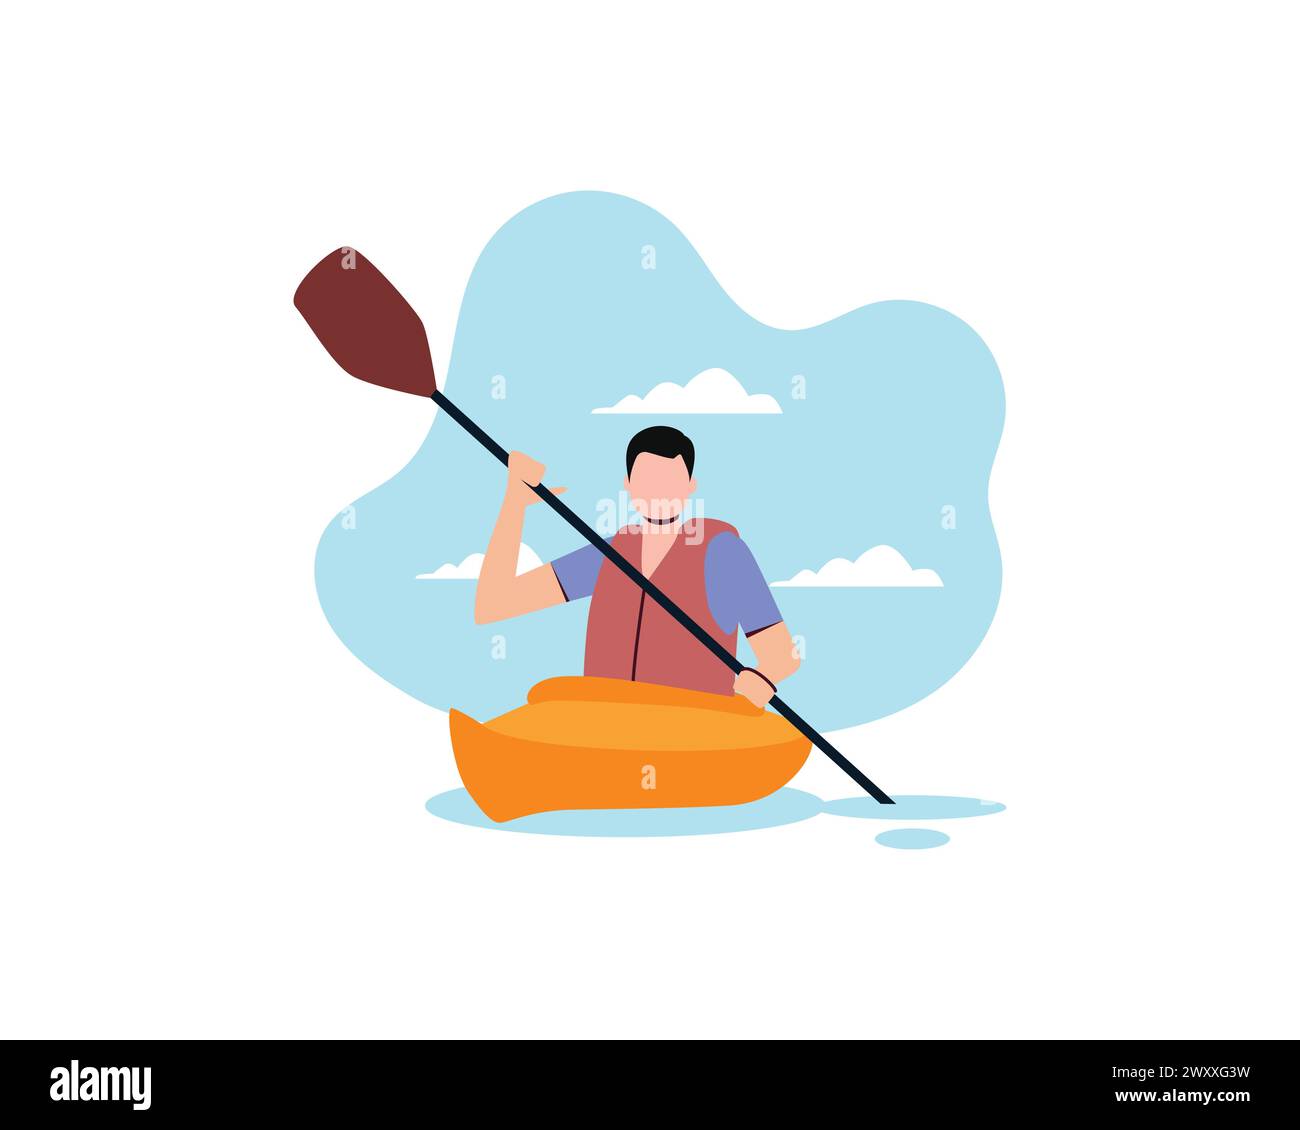 Junger Mann allein Ruderboot mit Paddel. Aktive Menschen mit Extremsport und Freizeitaktivität Vektor-Illustration Design isoliert auf weißem Hintergrund. Stock Vektor